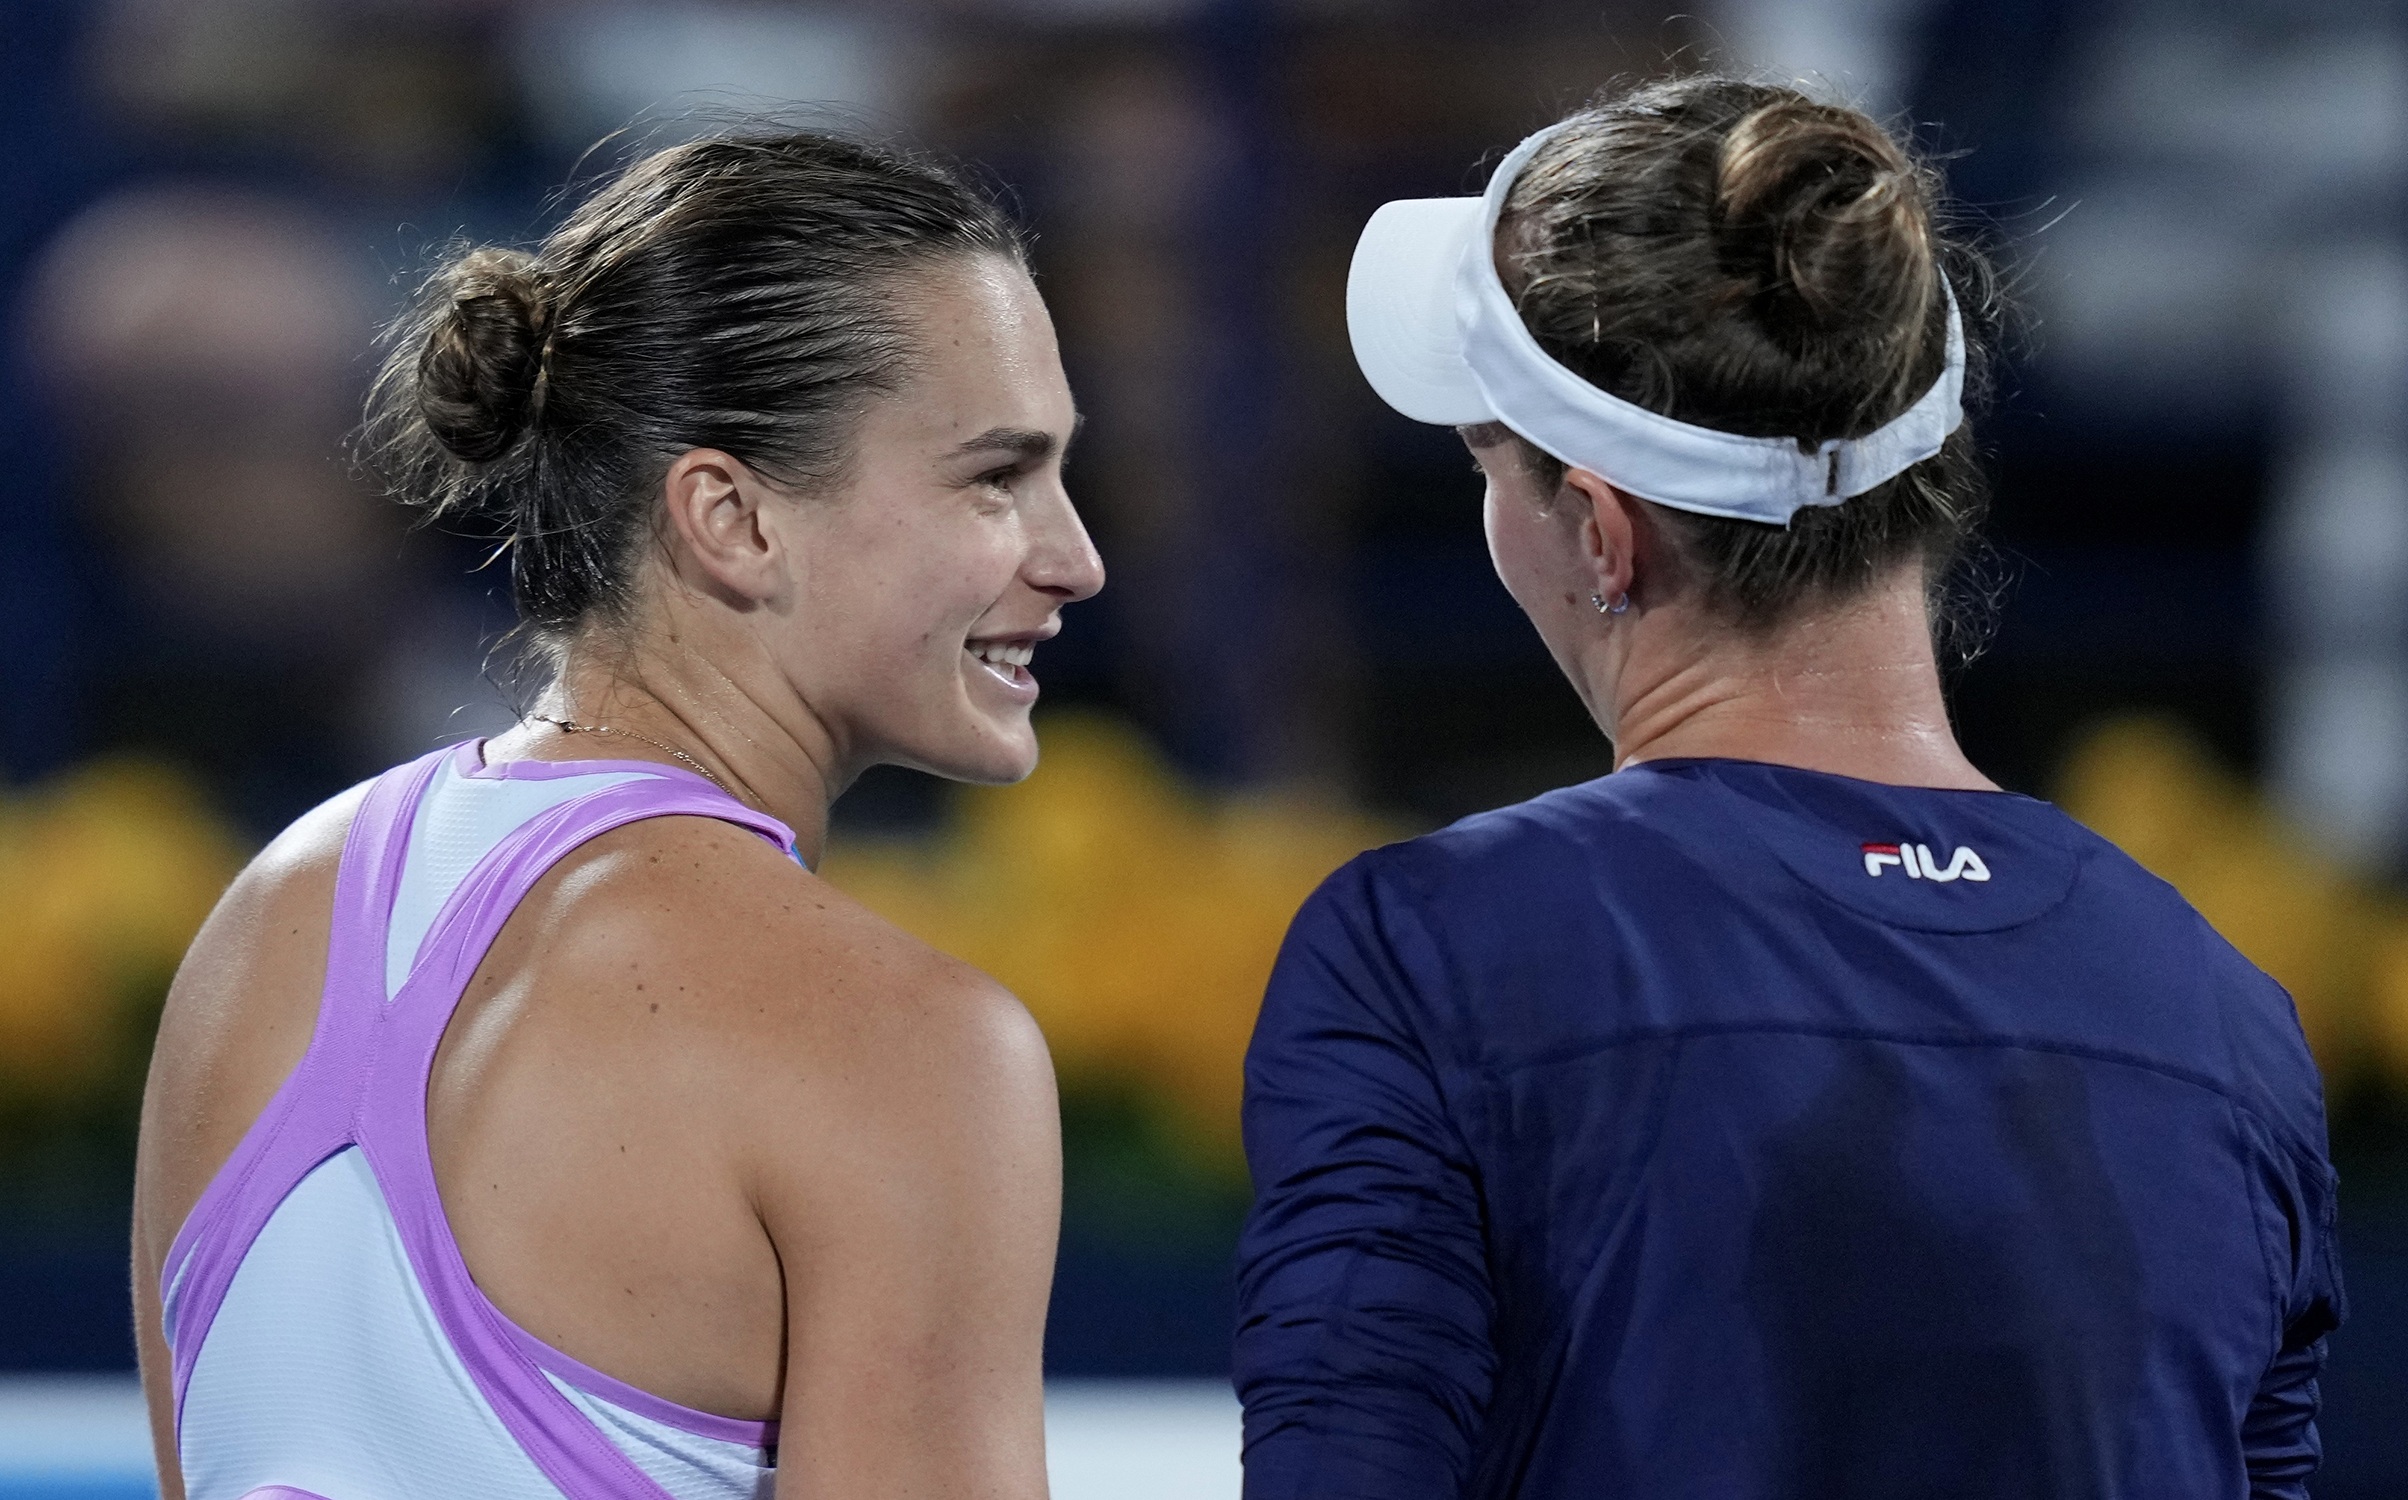 Barbora Krejcikova stuns Iga Swiatek in straight sets to claim Dubai Tennis  Championships title - Eurosport